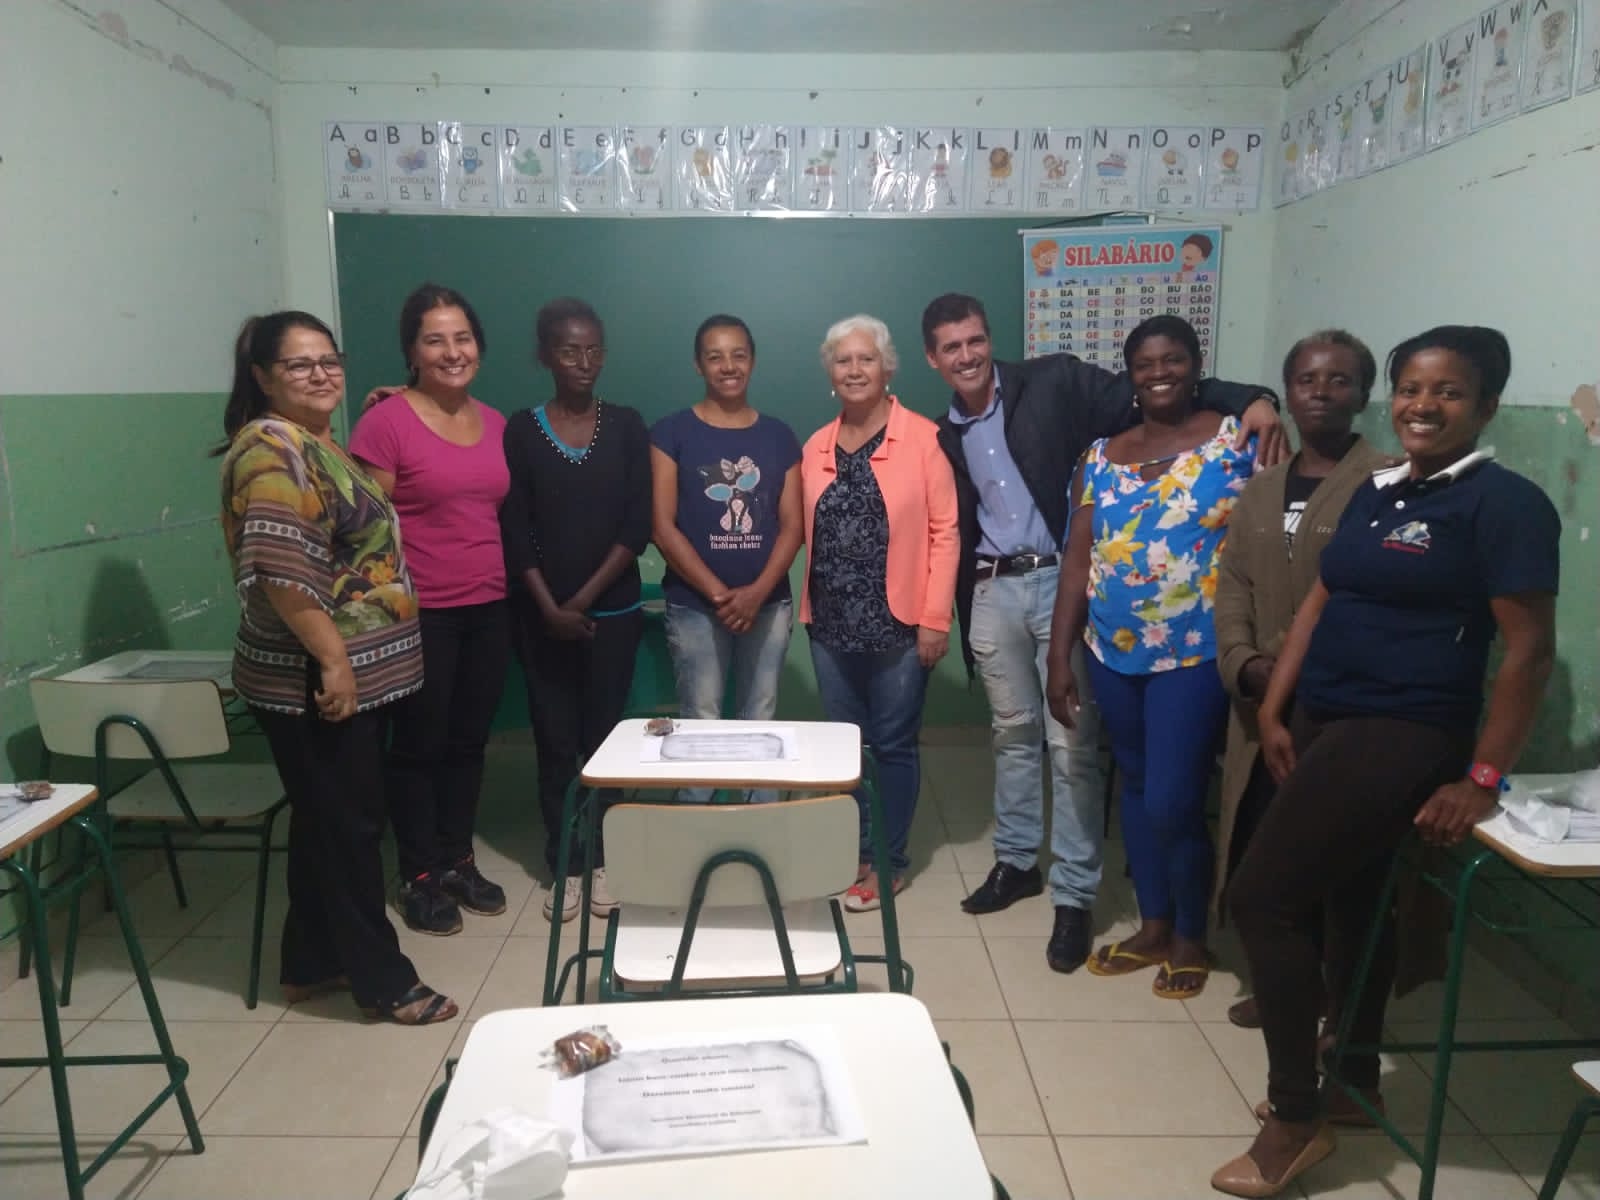 SEMED implementa educação quilombola para jovens e adultos na comunidade de Mato Dentro